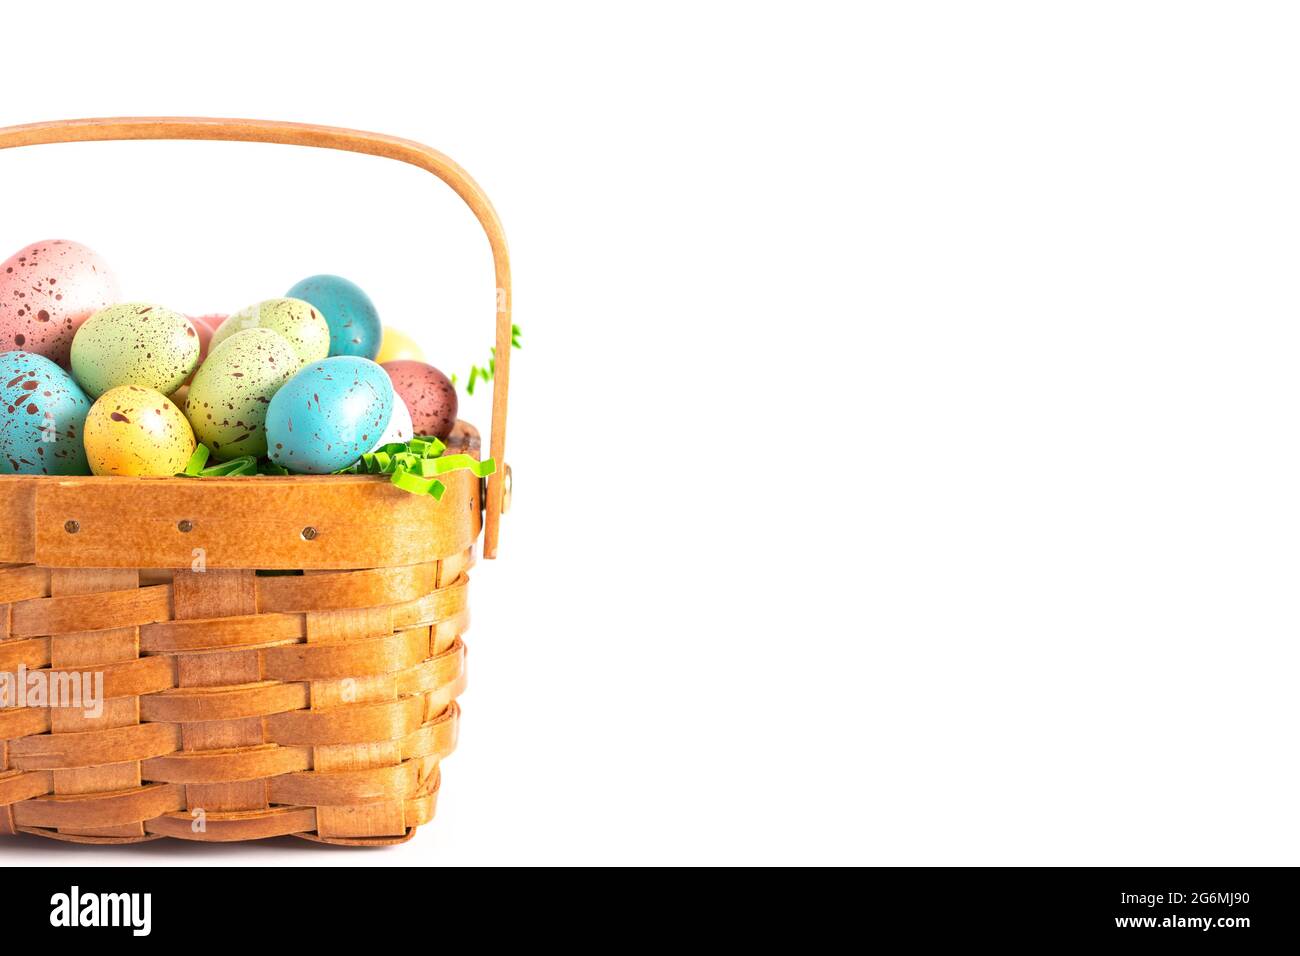 Un panier de Pâques en bois rempli d'œufs décorés isolés sur un fond blanc Banque D'Images